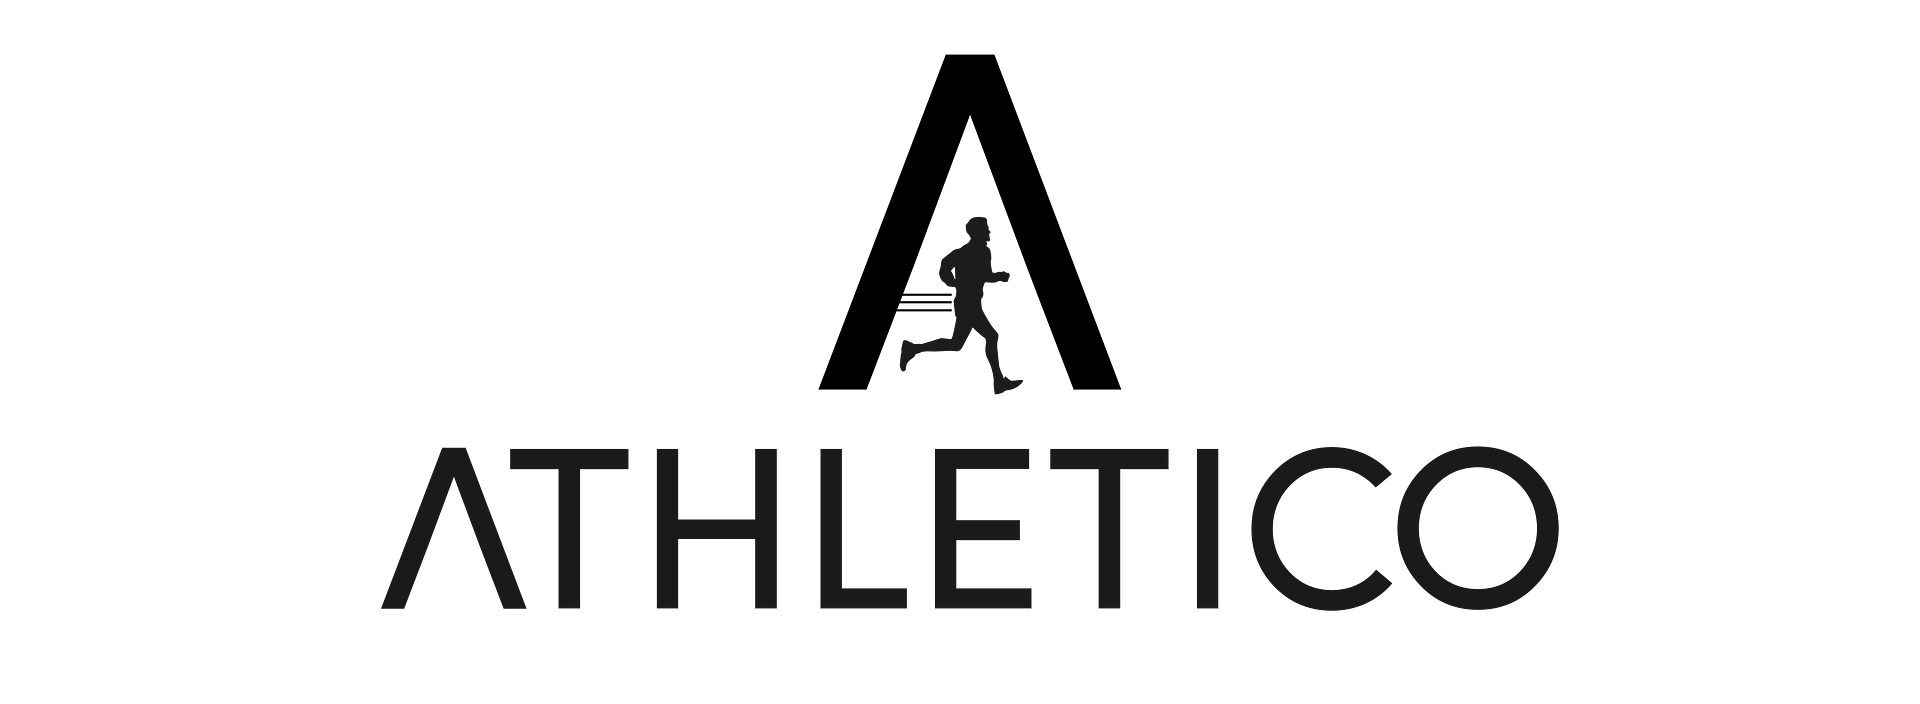 Athletico logo png